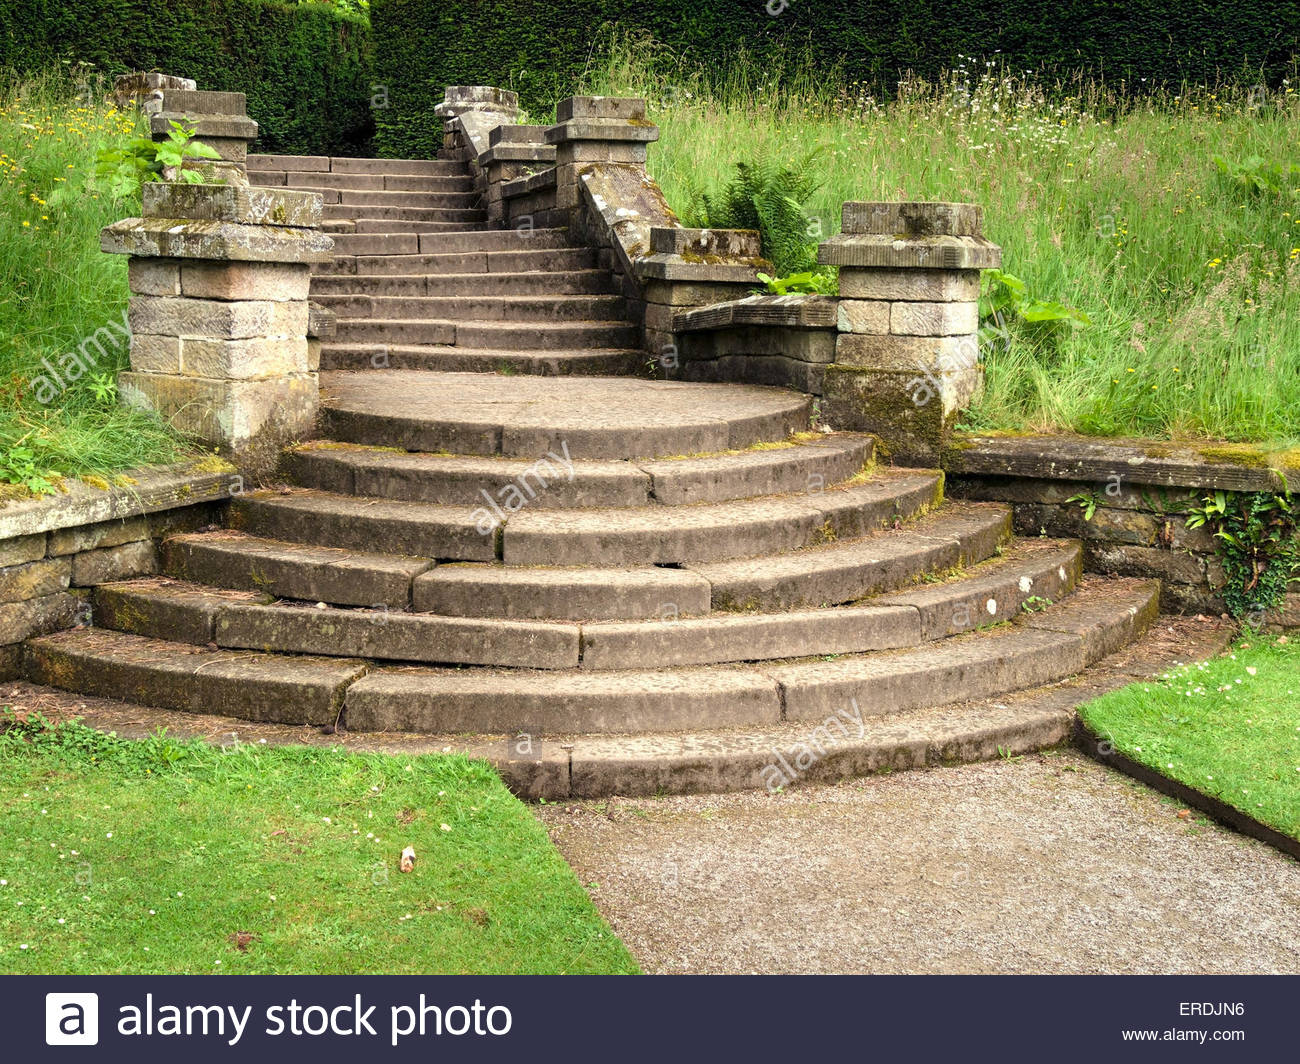 Escaleras De Piedra Ornamentada Curvo En Jardines Chatsworth Derbyshire Inglaterra Reino Unido Fotografia De Stock Alamy